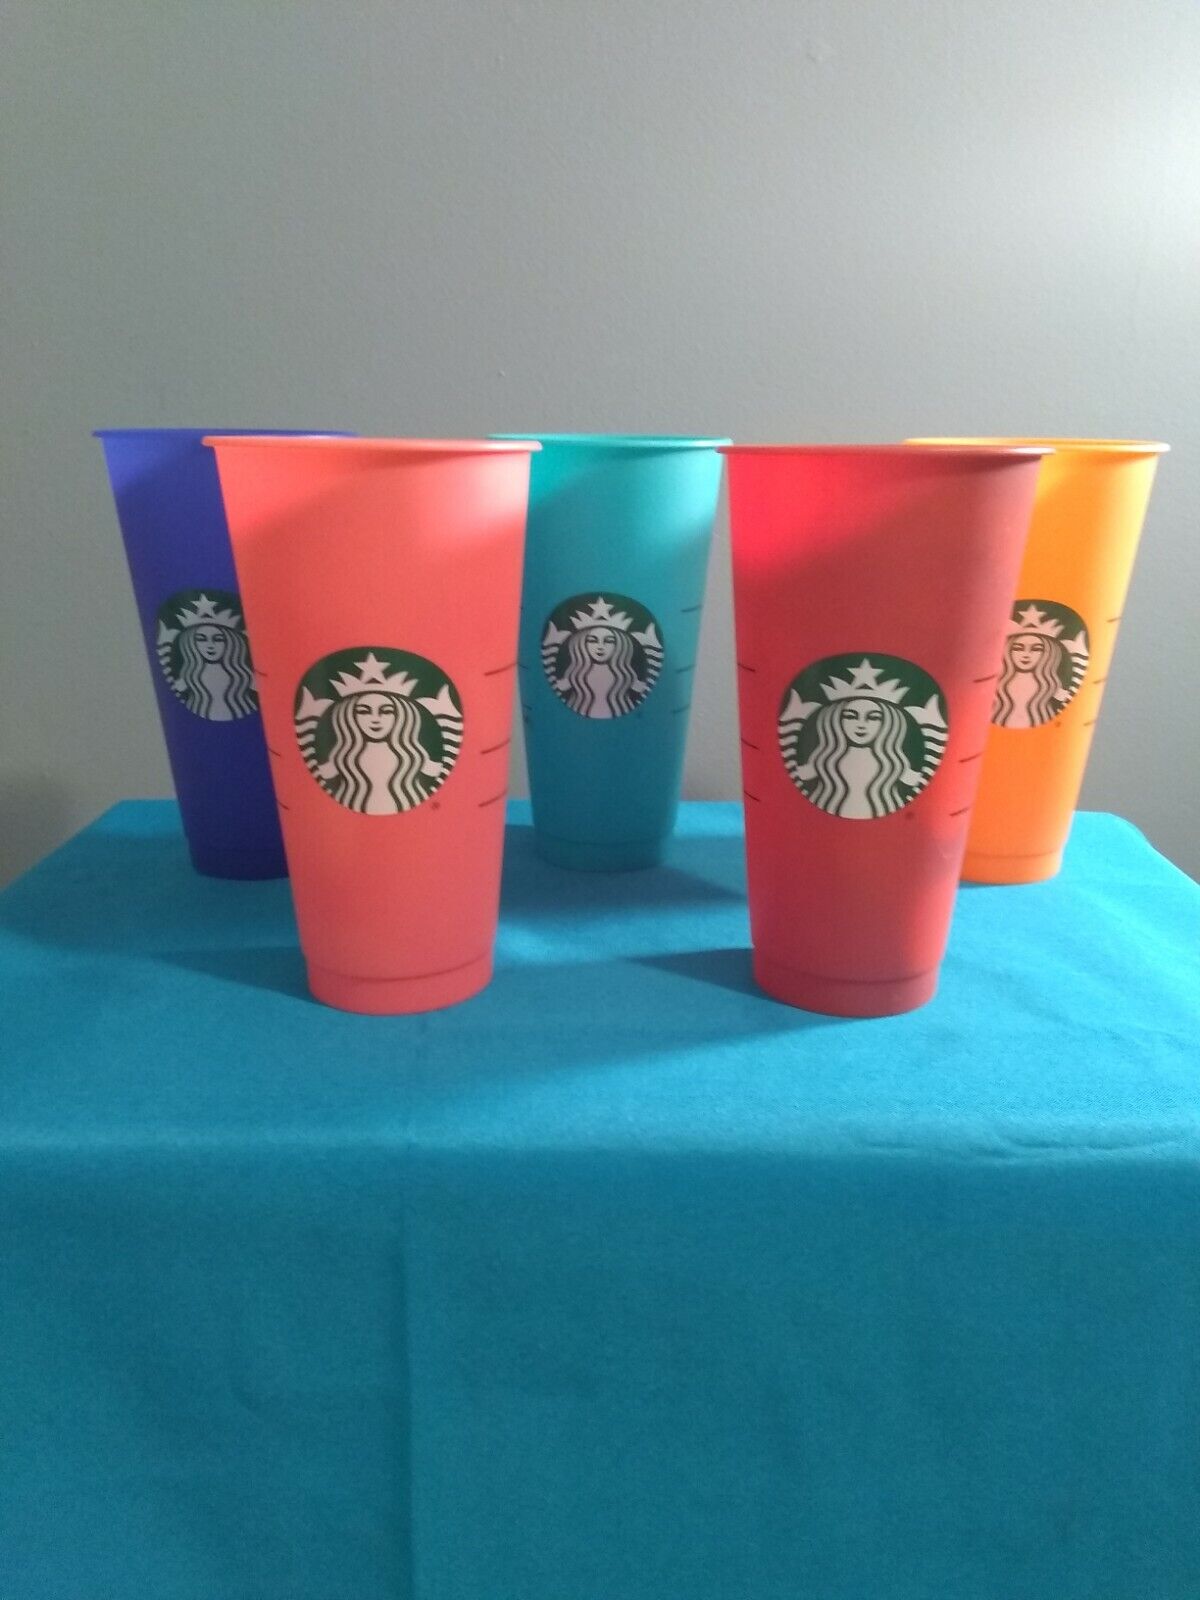 5 Starbucks Reusable Plastic Venti Cup multicolored 24 oz Cold No Lid or Straw